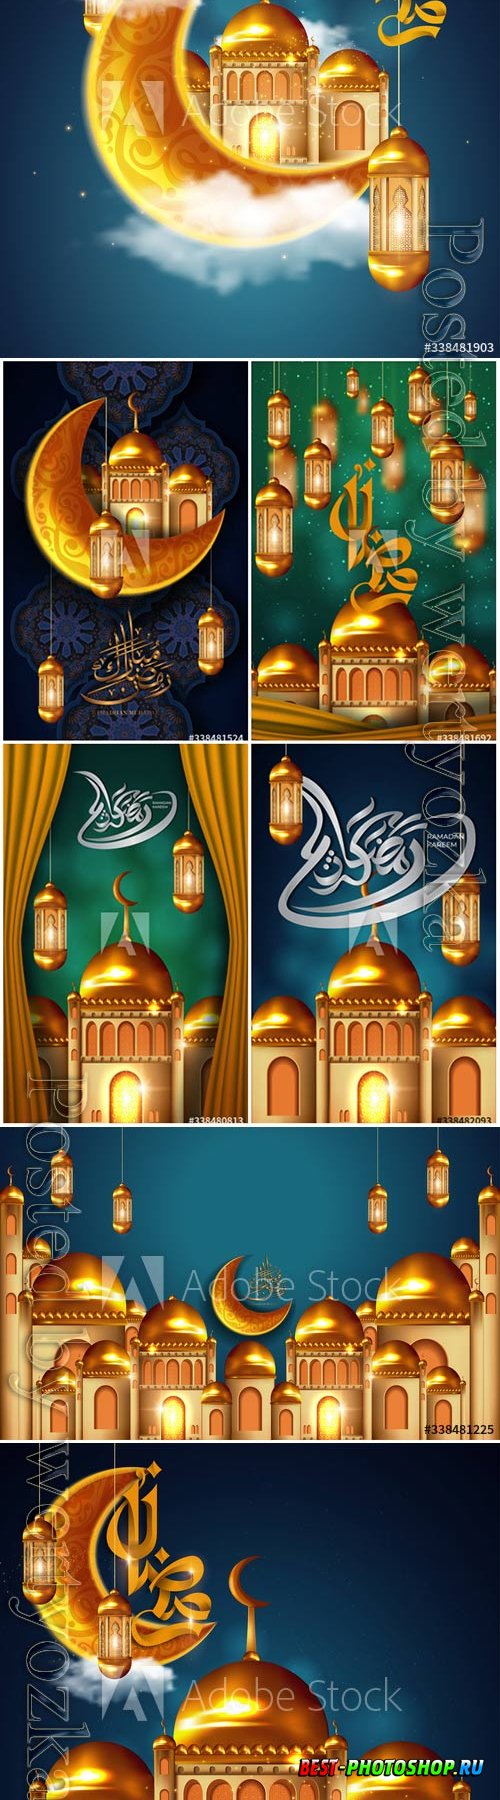 Ramadan Kareem beautiful greeting card with arabic calligraphy